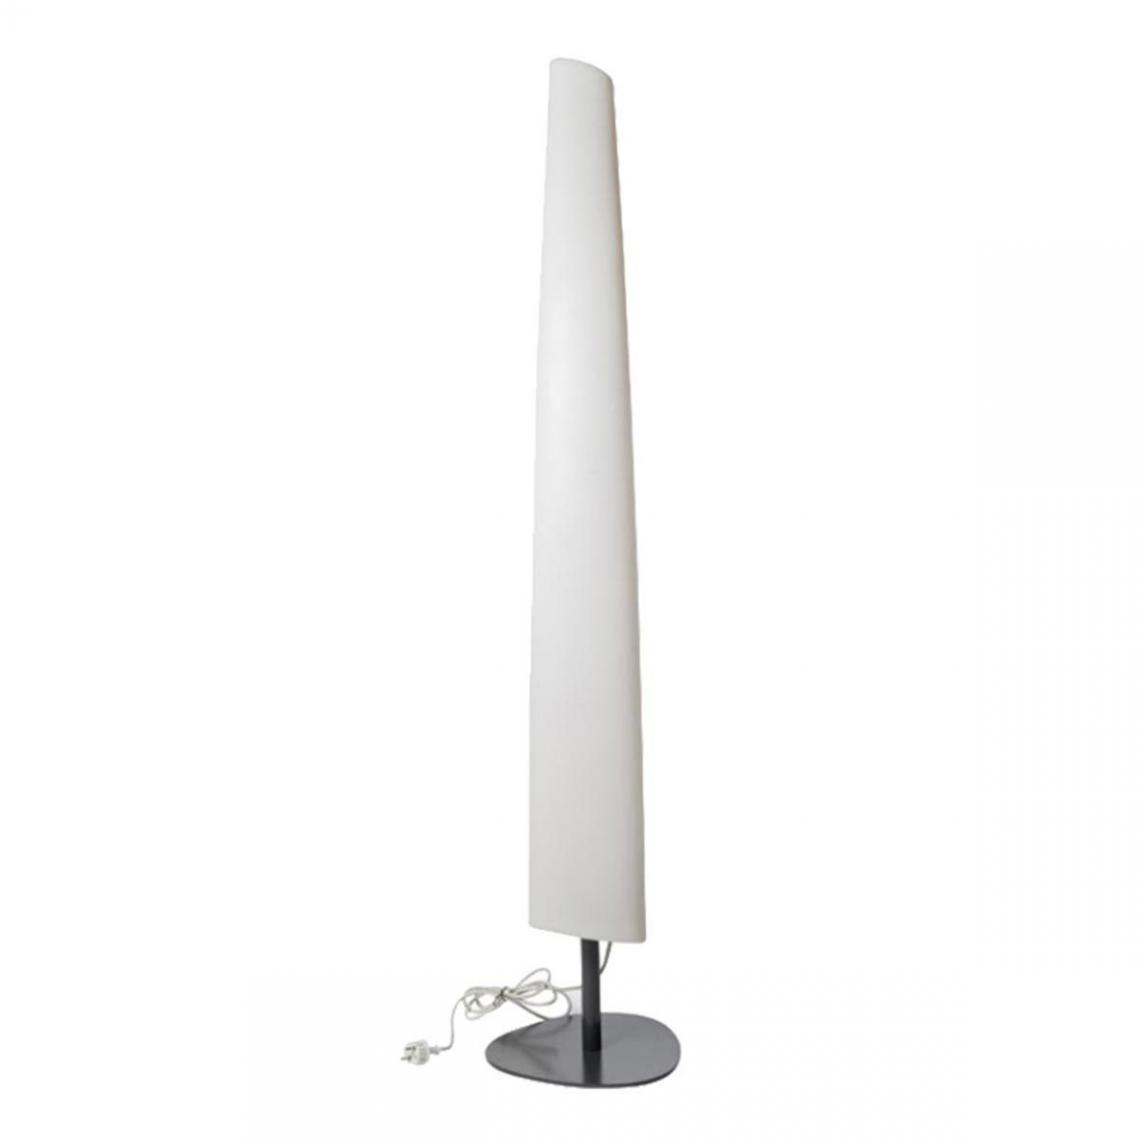 Lumisky - Lampadaire filaire BAY blanc en plastique H160cm - Lampadaire